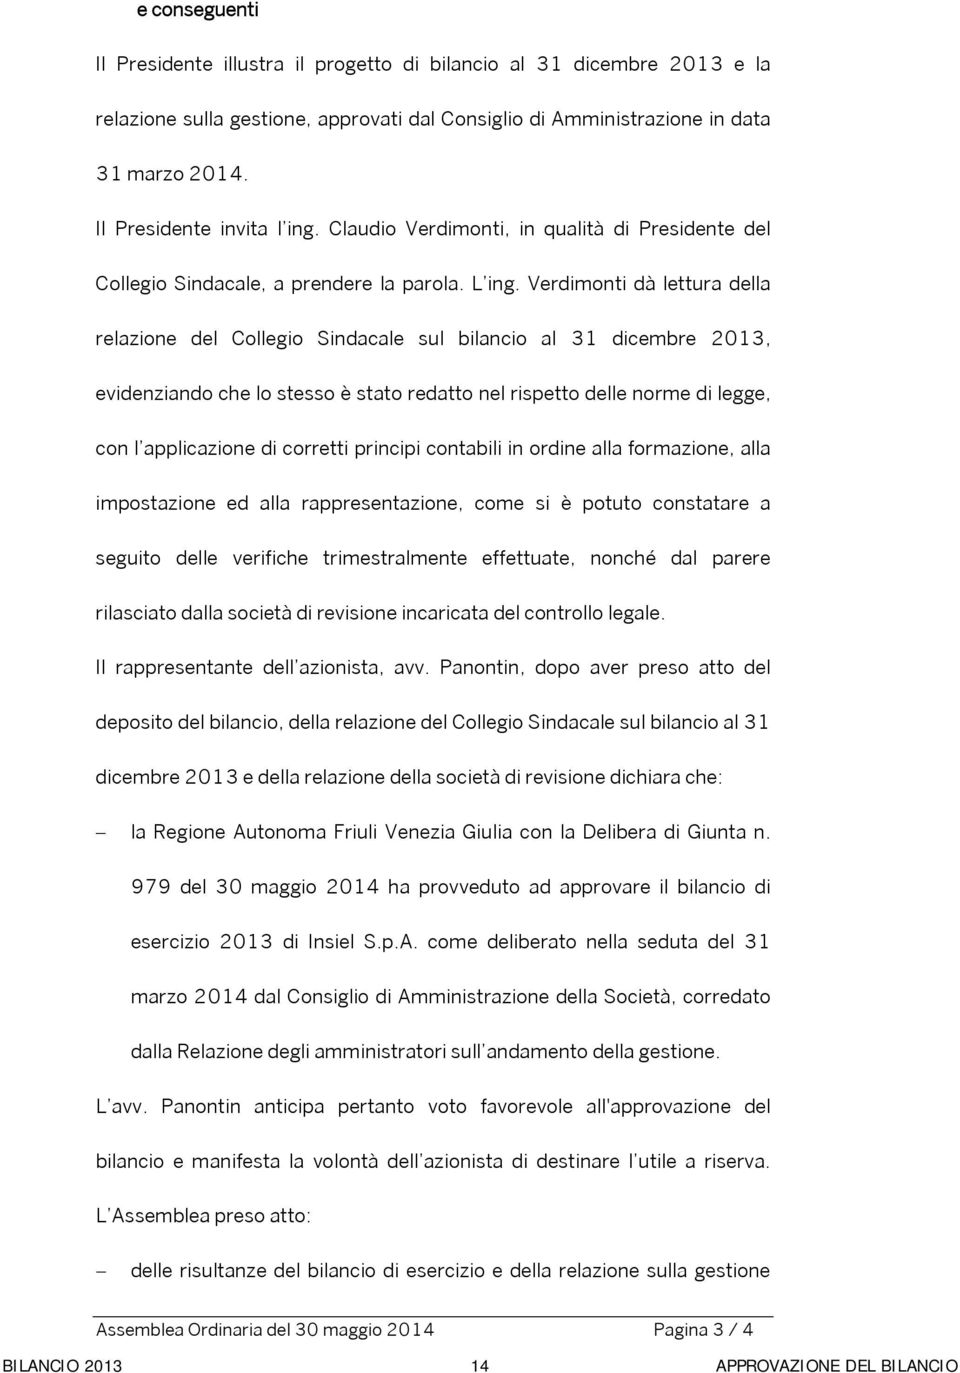 Verdimonti dà lettura della relazione del Collegio Sindacale sul bilancio al 31 dicembre 2013, evidenziando che lo stesso è stato redatto nel rispetto delle norme di legge, con l applicazione di